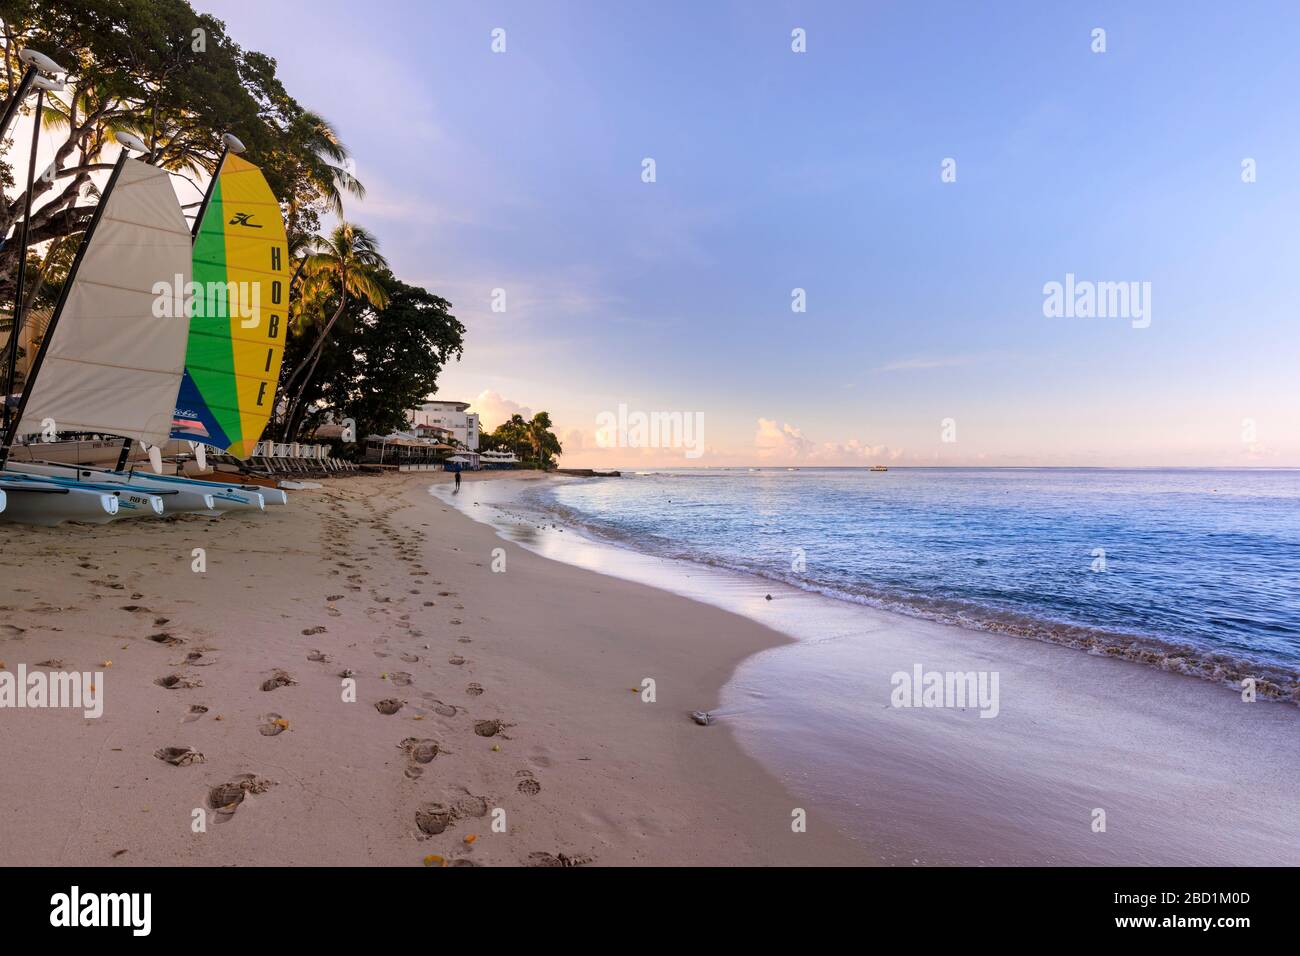 Baie de Paynes au lever du soleil, bateaux à voile colorés sur plage de sable rose, belle côte ouest, Barbade, îles Windward, Caraïbes Banque D'Images